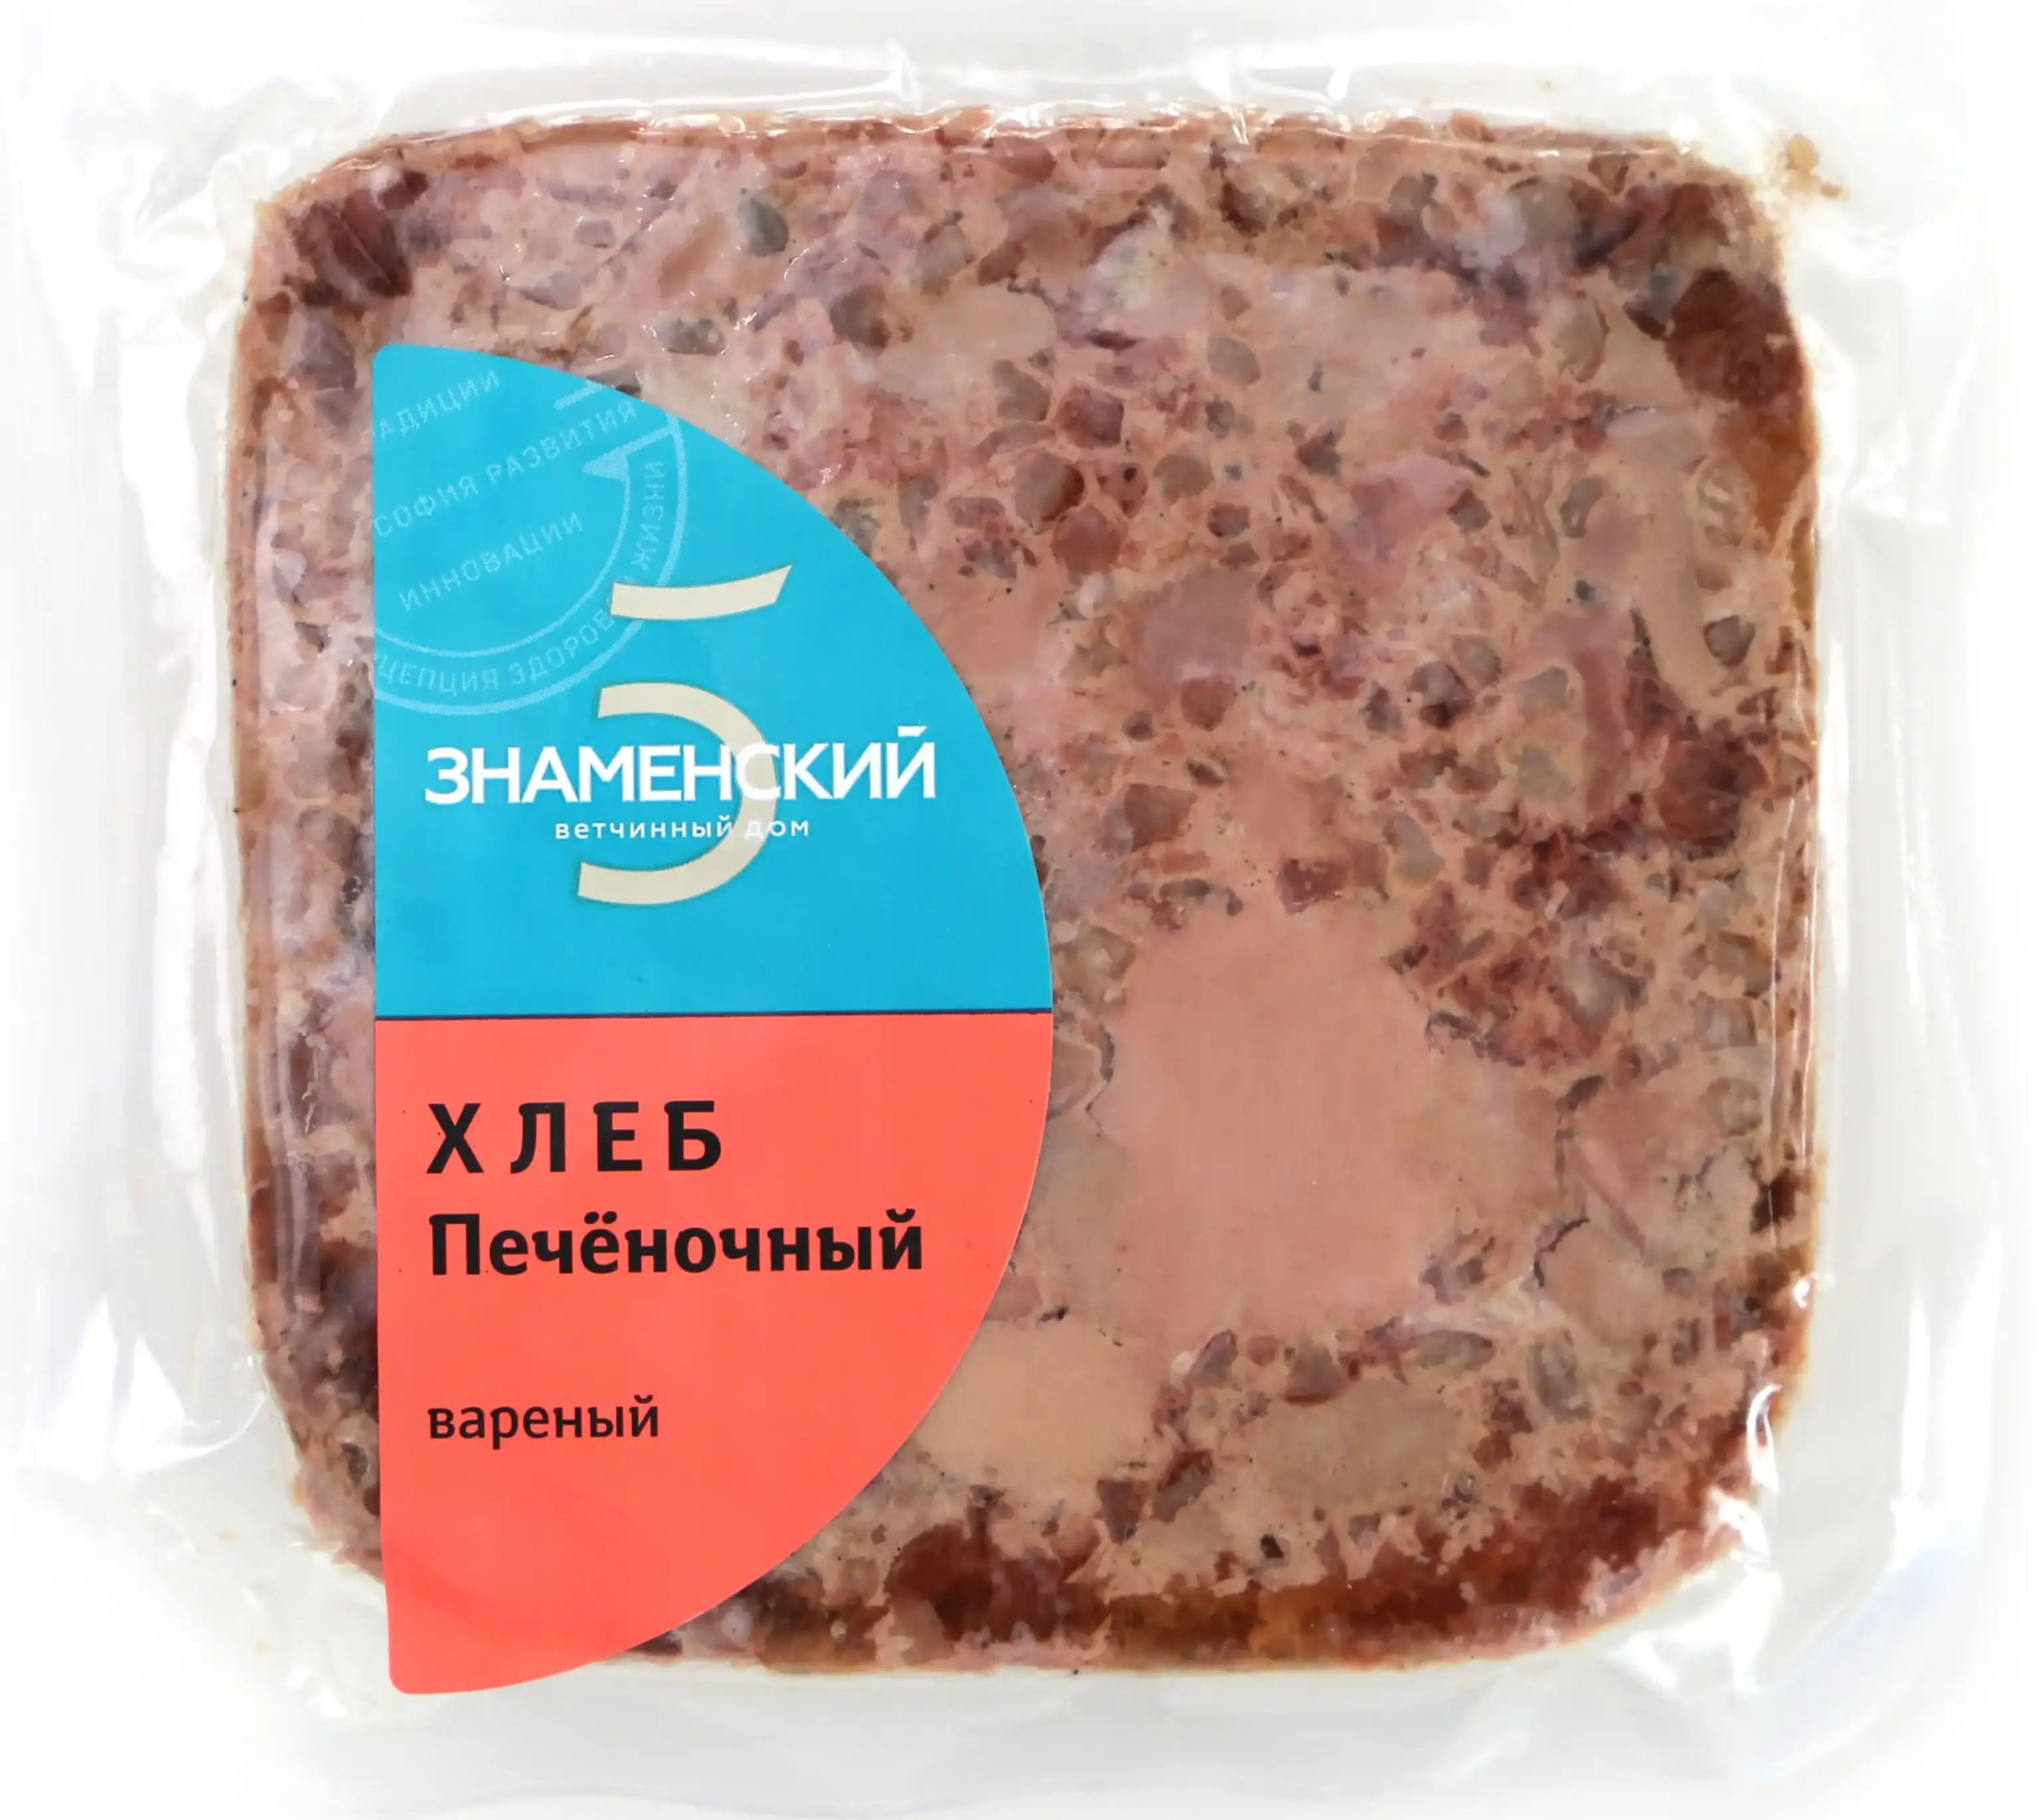 Мясной продукт Хлеб печеночный 300г Знаменский  